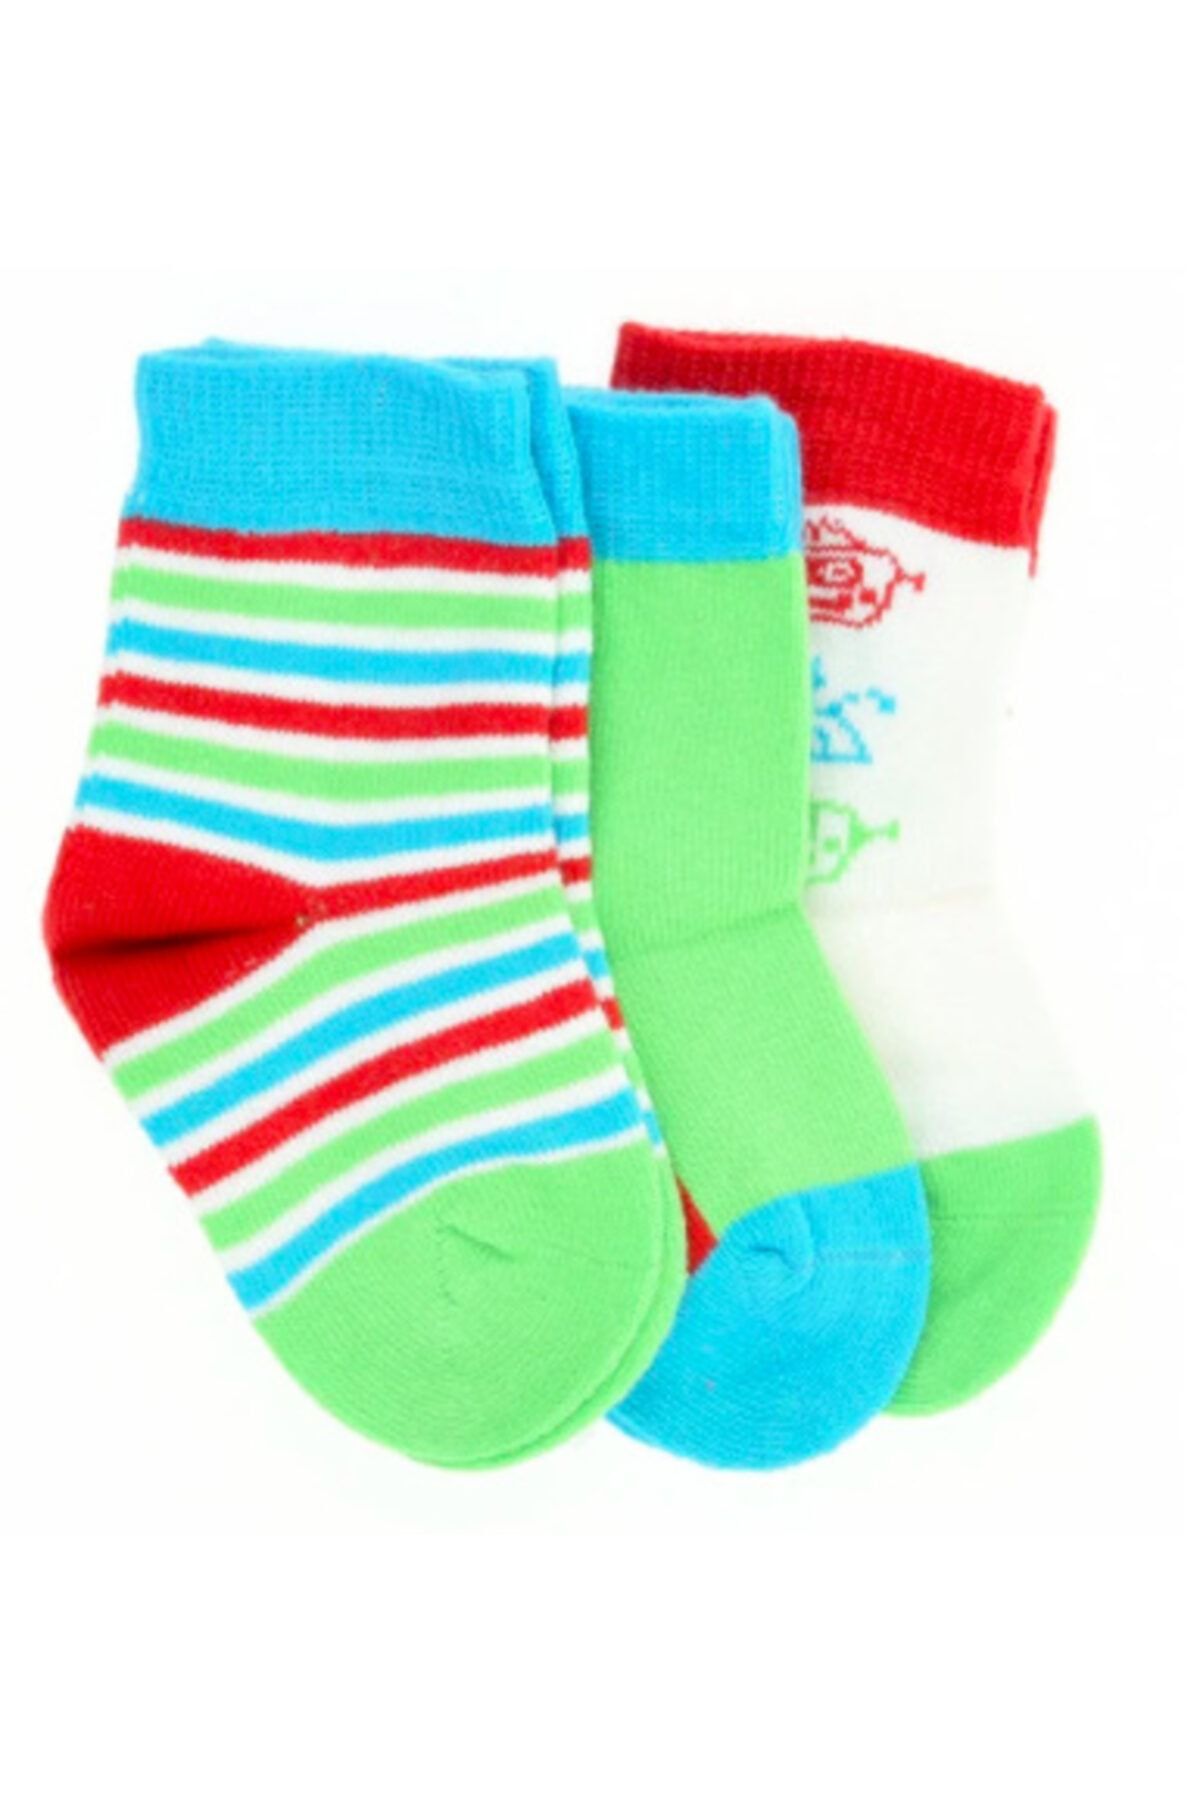 Pixter Bro Erkek Bebek Çok Renkli Çorap  82EBROBSSET